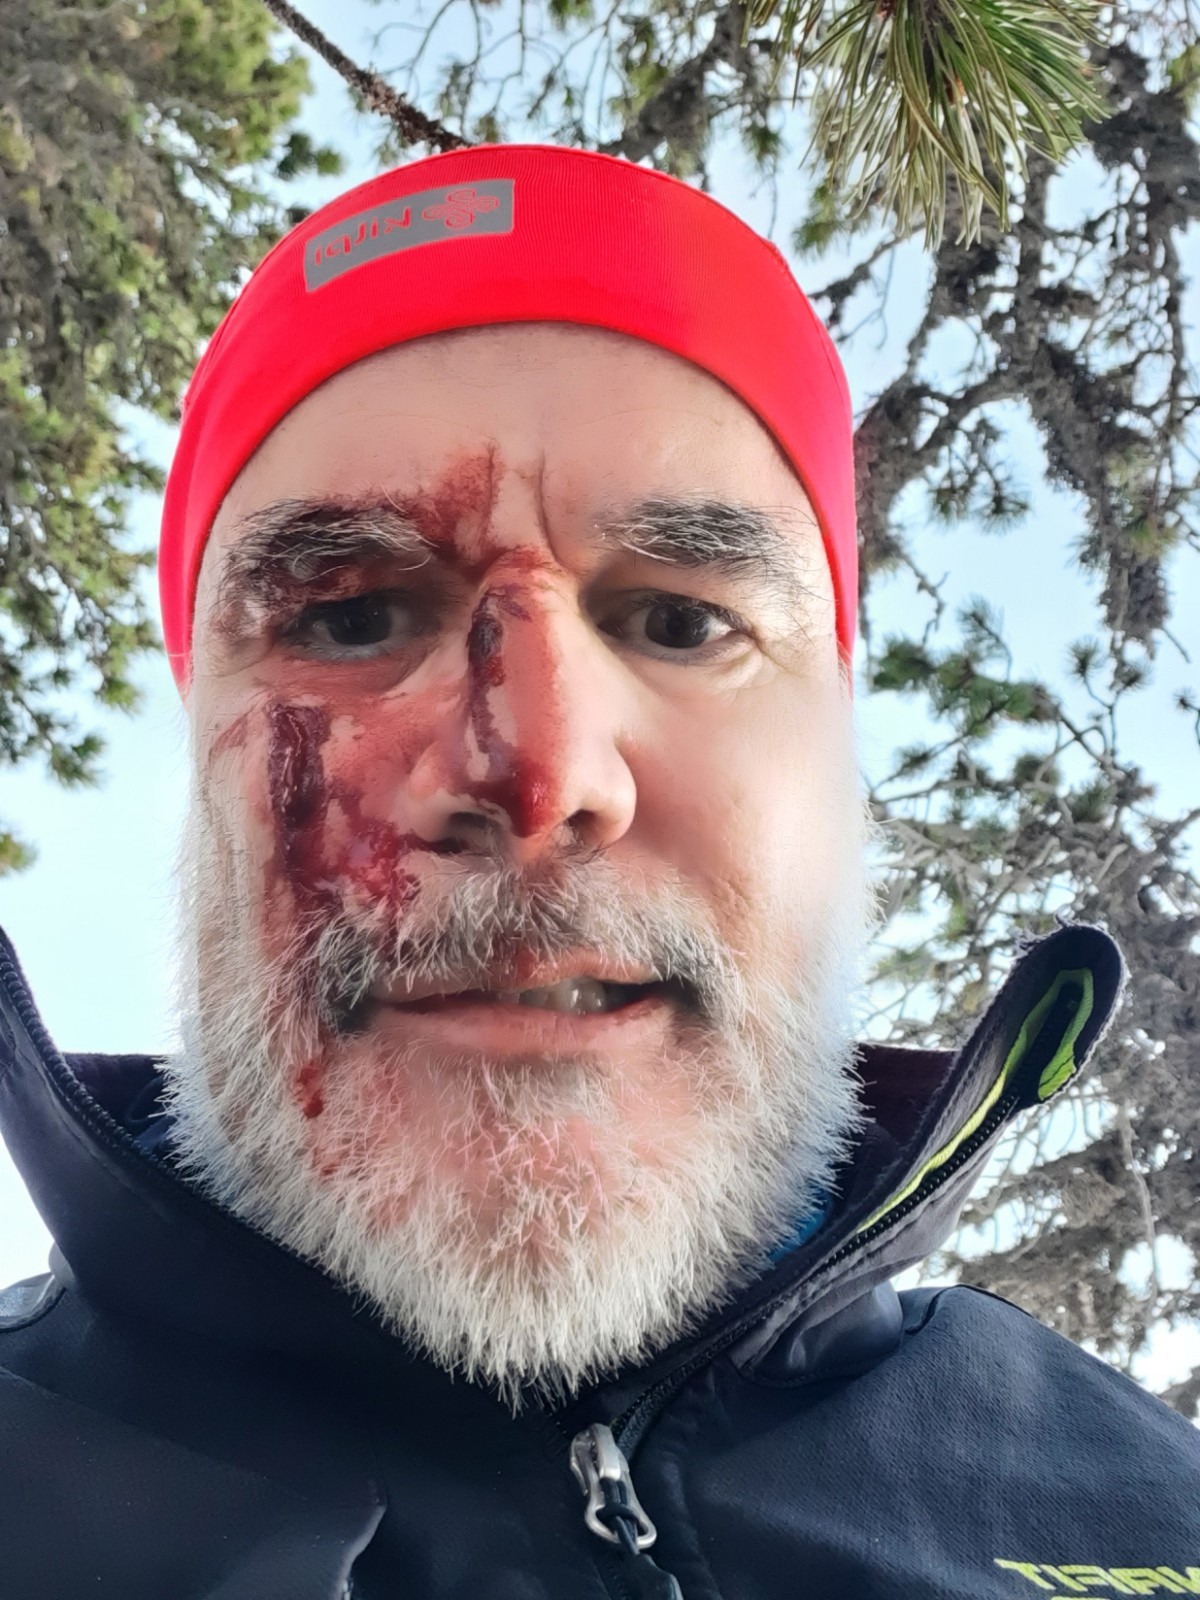 Selfie après la chute pour voir les blessures au visage